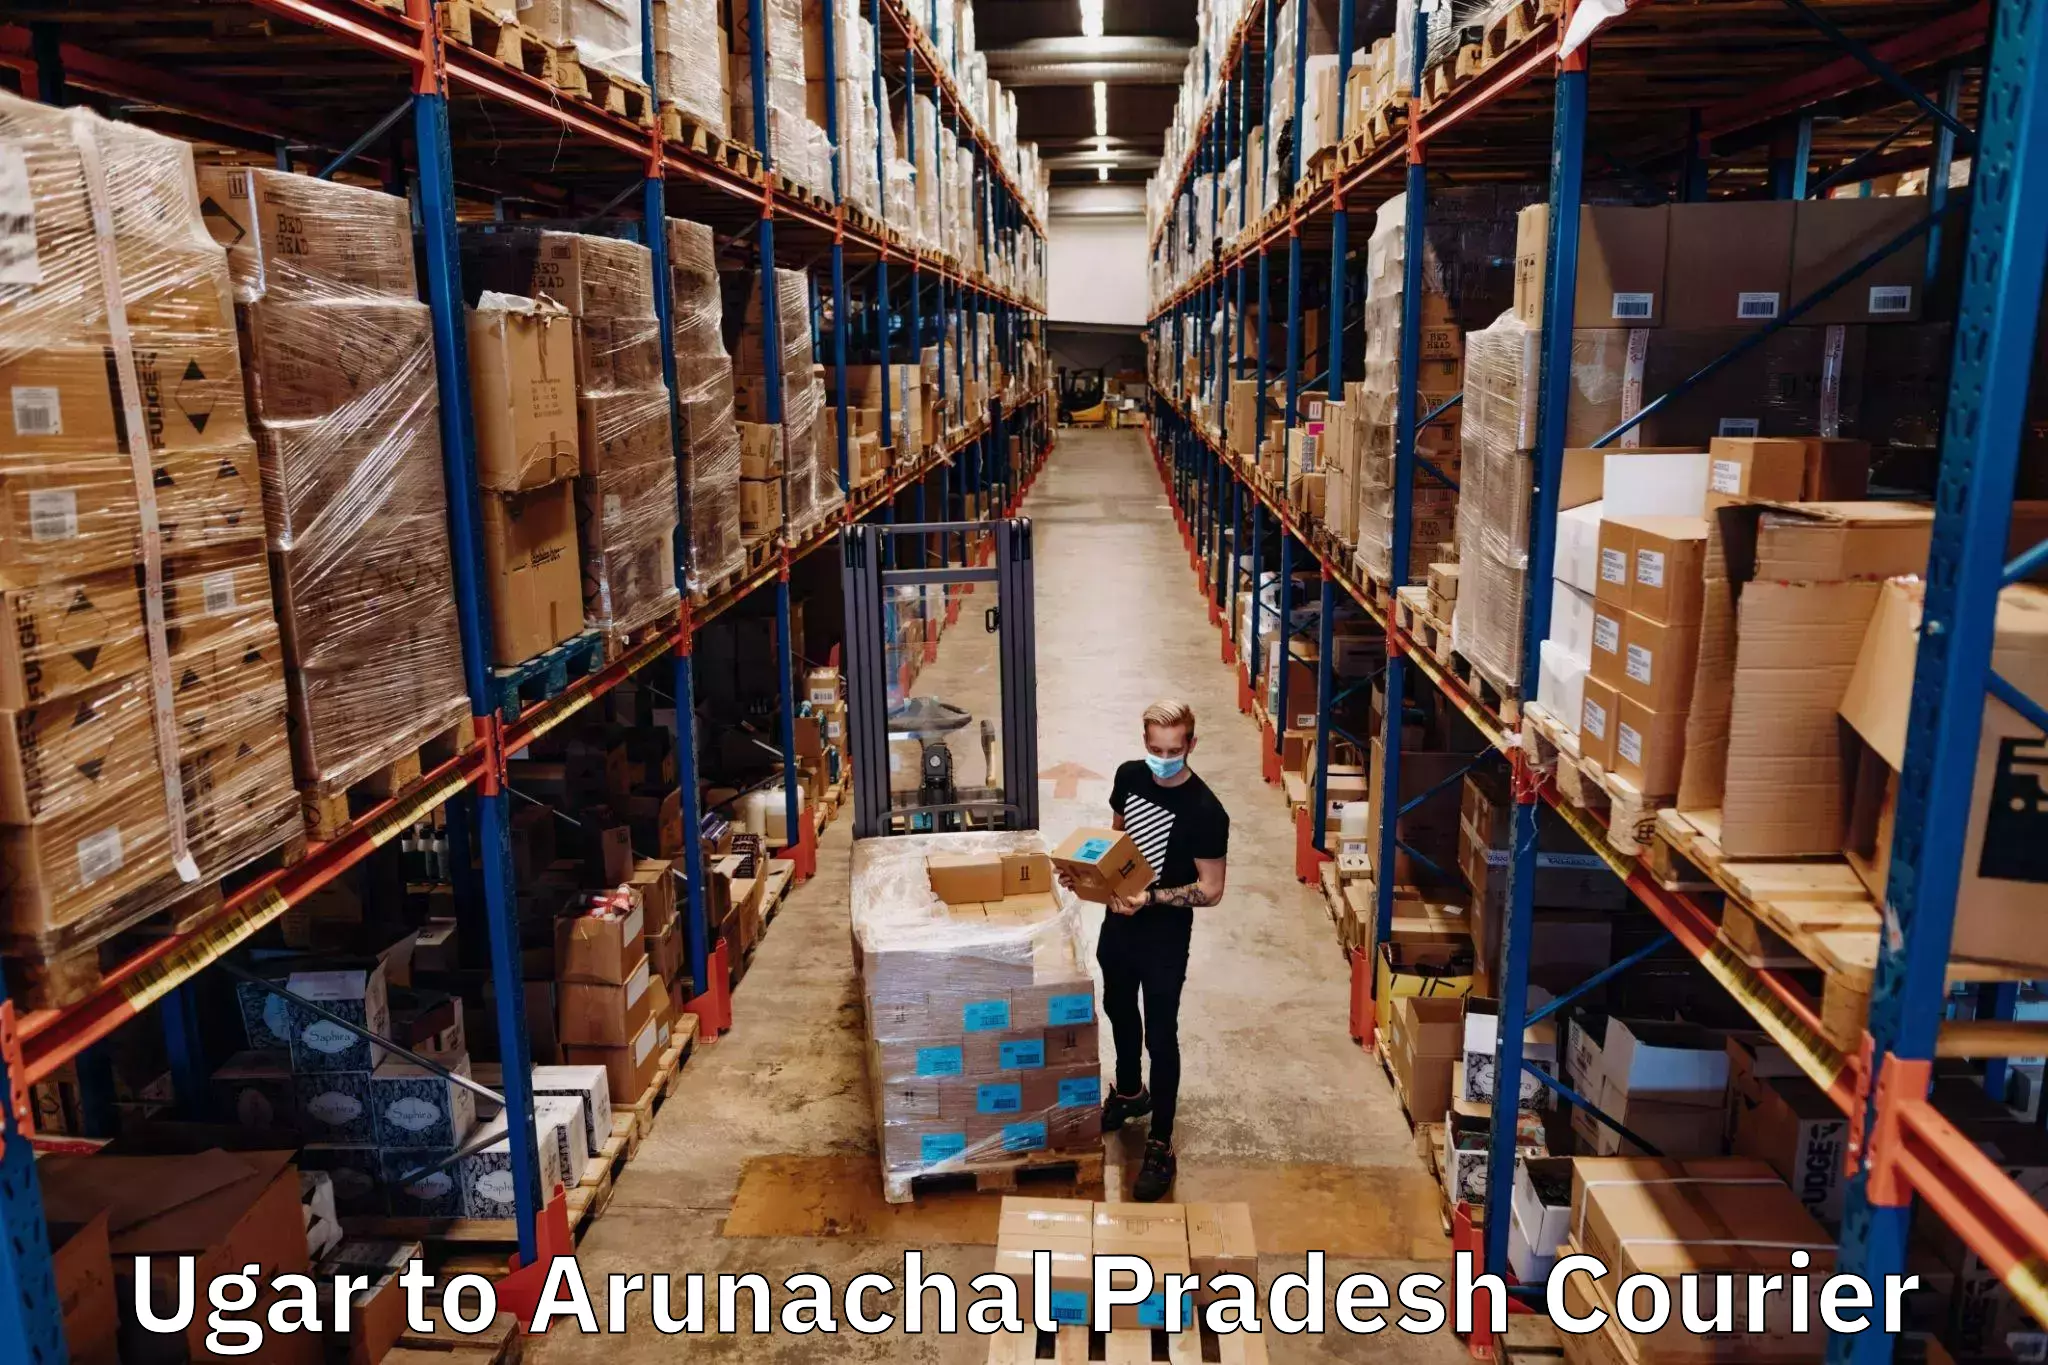 Next-generation courier services Ugar to Arunachal Pradesh